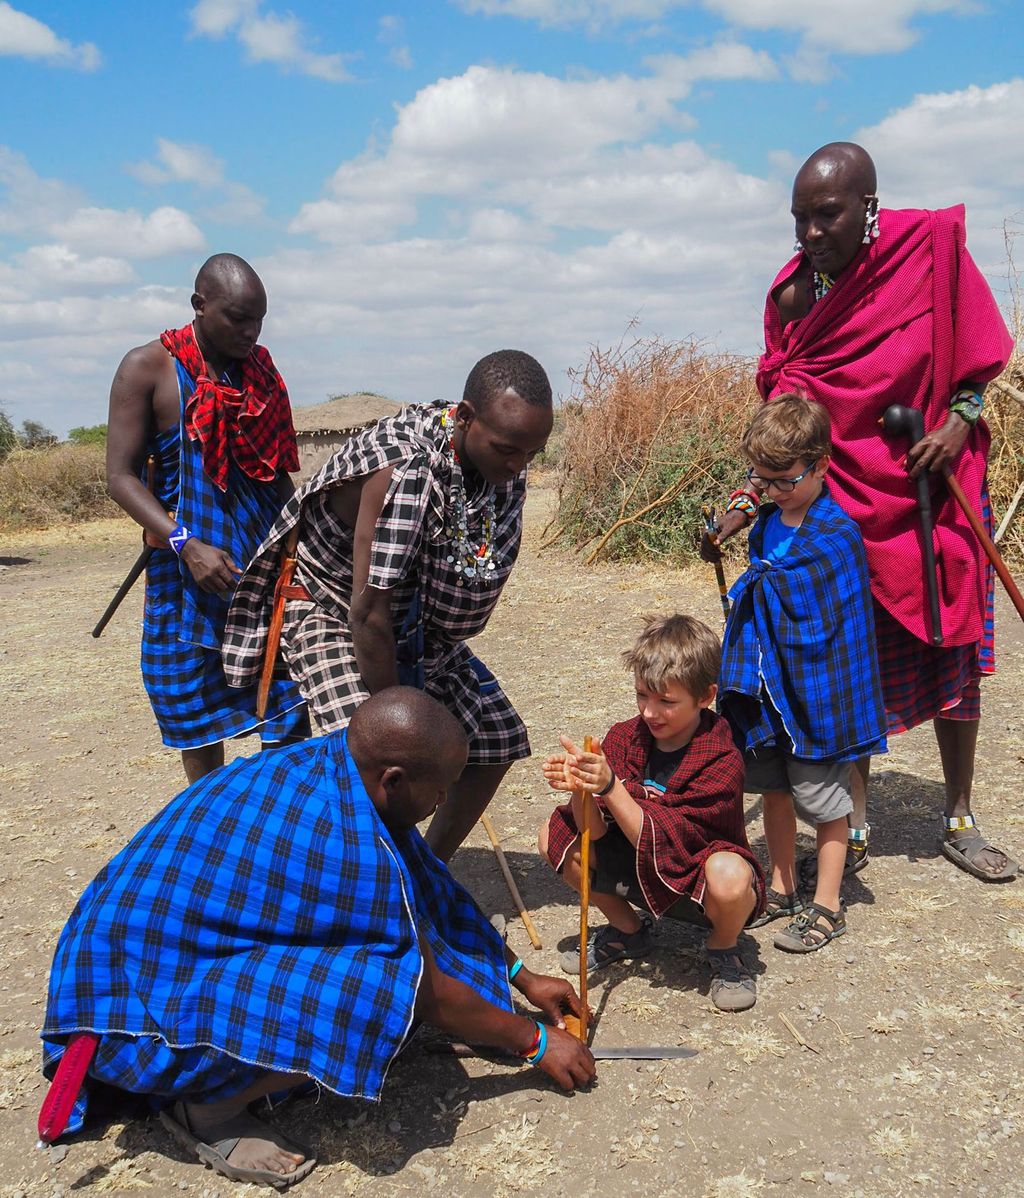 Los niños con una tribu en África